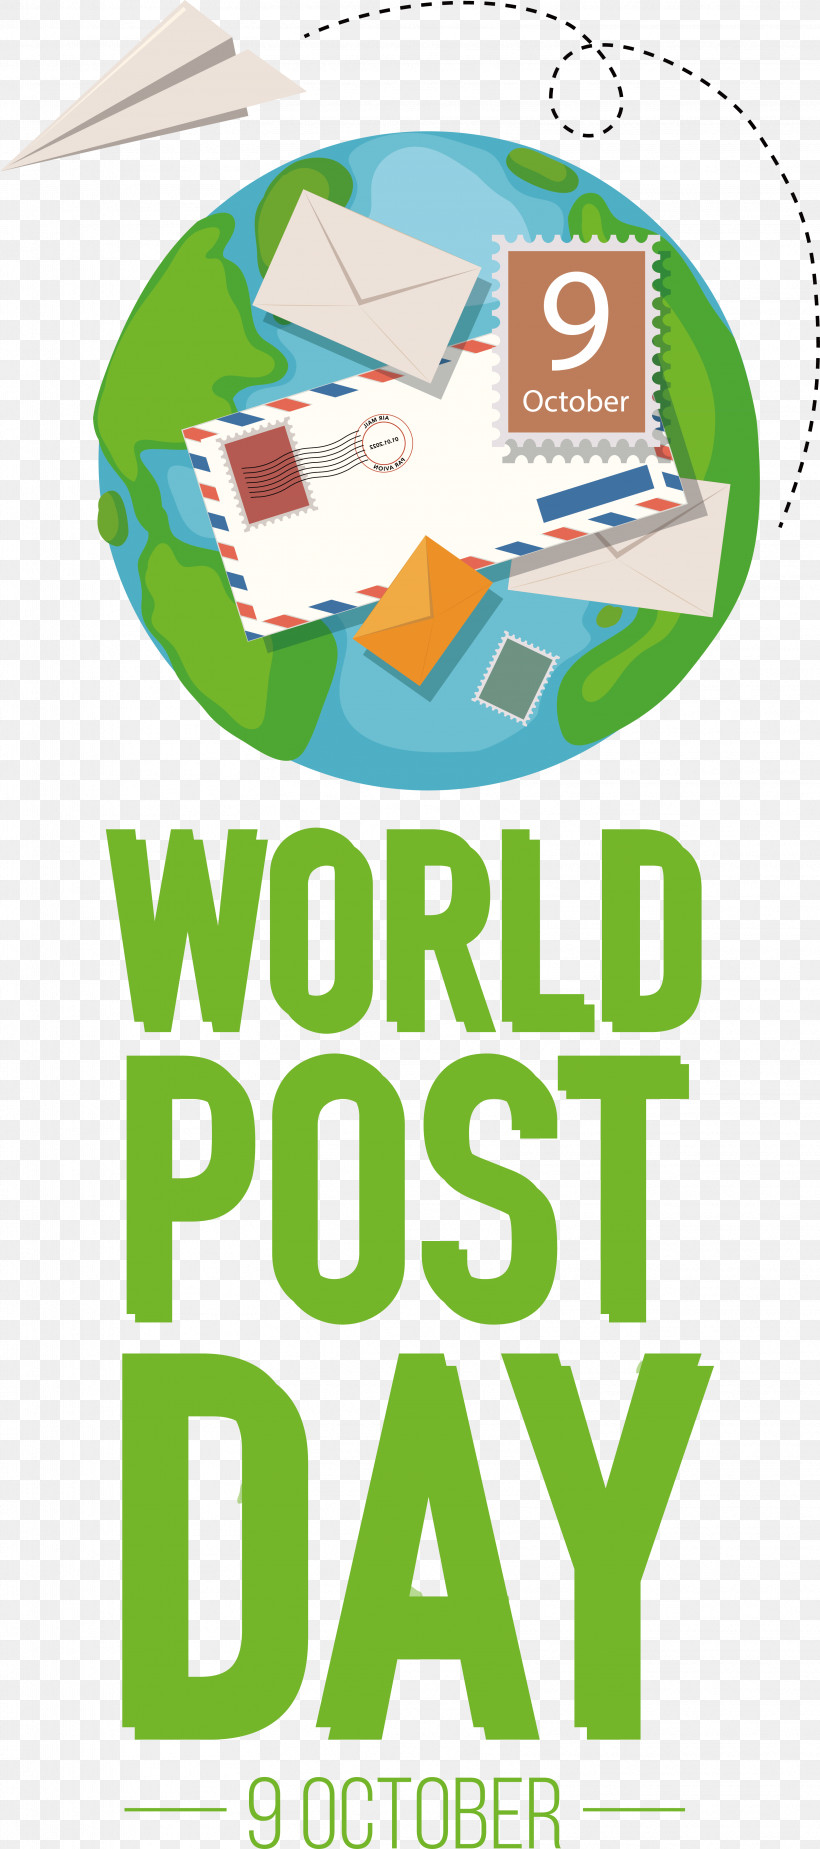 World Post Day World Post Day Poster World Post Day Theme, PNG, 3234x7296px, World Post Day, World Post Day Poster, World Post Day Theme Download Free